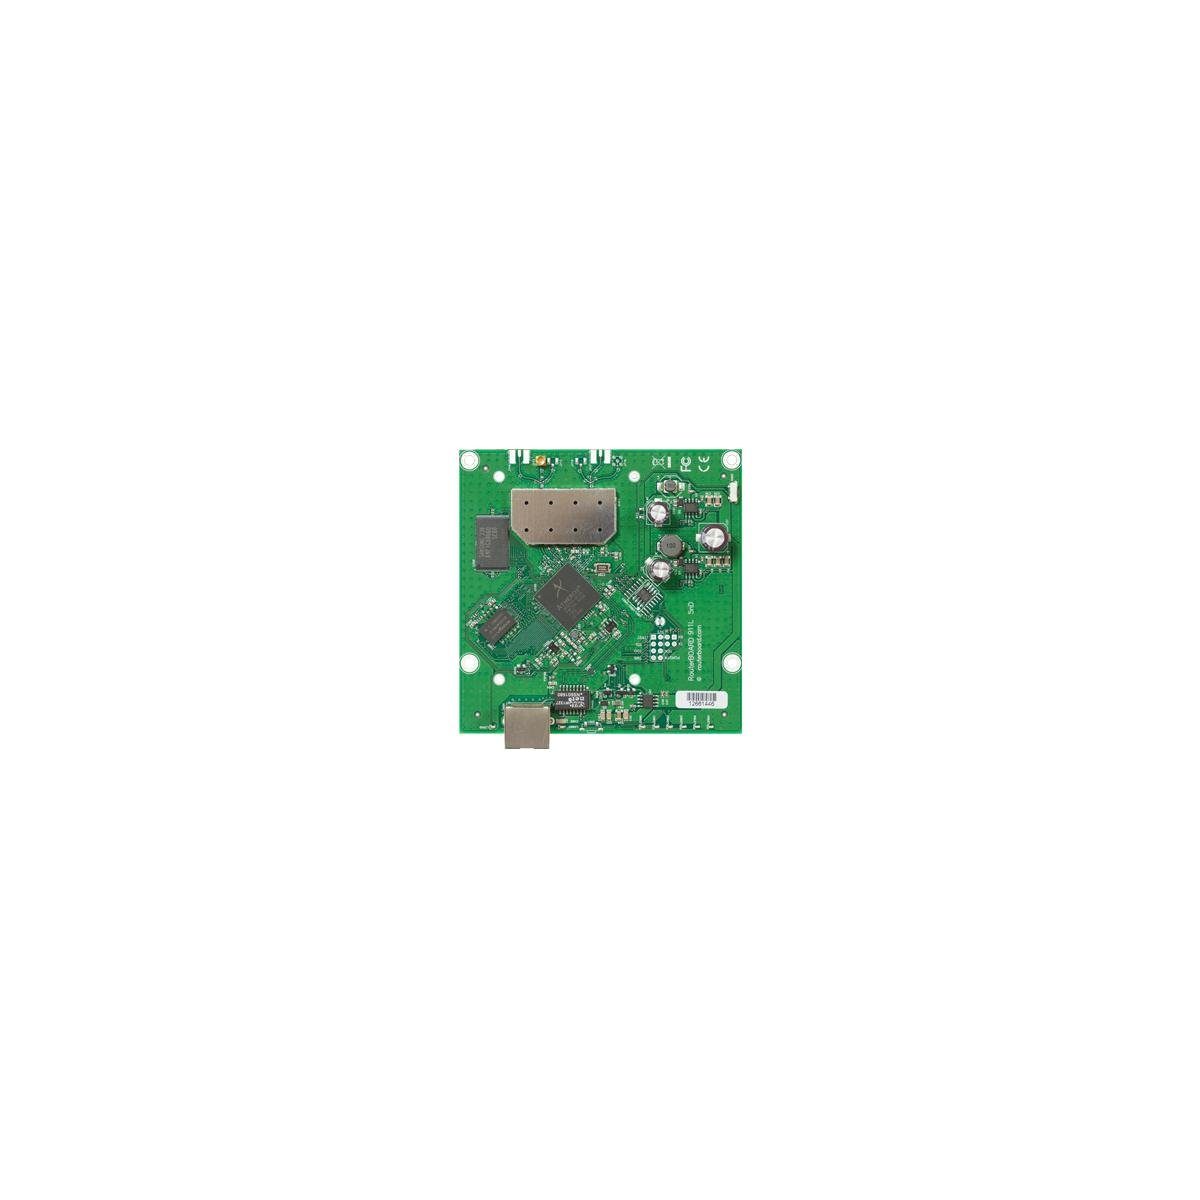 5 64 - MikroTik GHz, RouterBOARD, RB911-5HN dBm Netzwerk-Switch 23 MB DDR2,